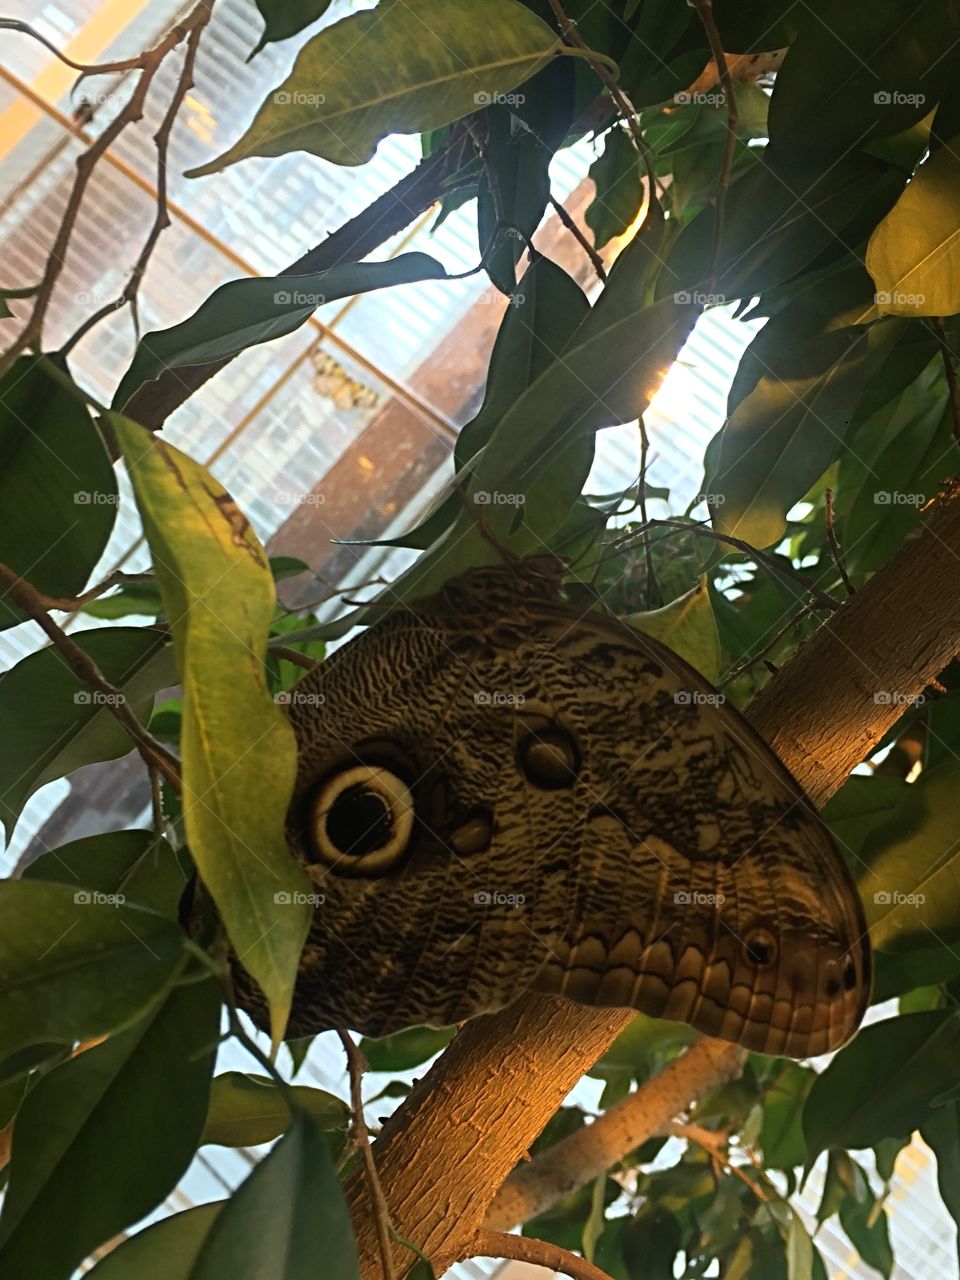 Butterfly in tree